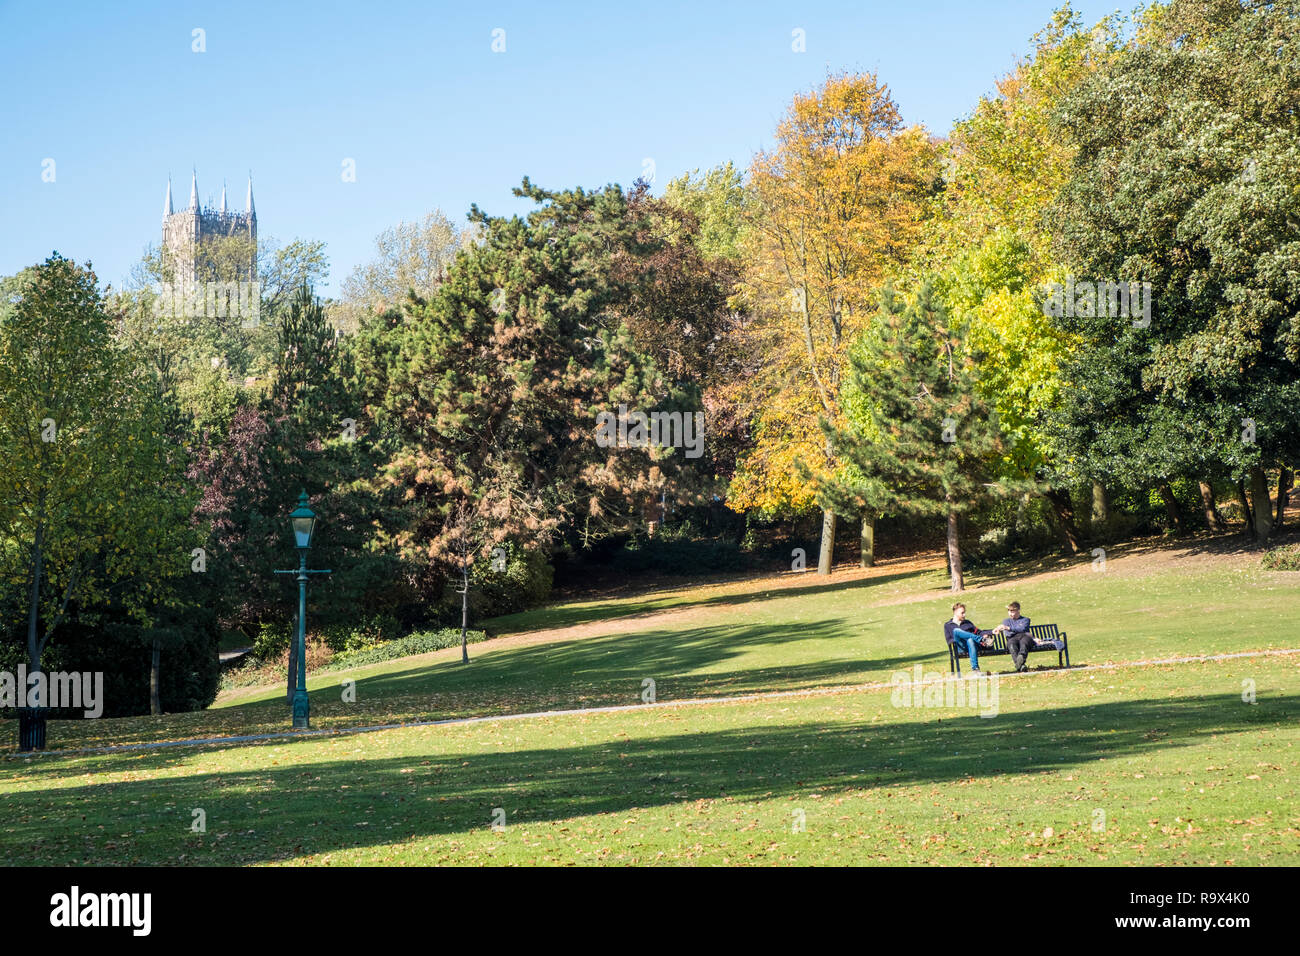 Des gens assis dans un parc entouré d'arbres en automne le soleil. Arboretum Lincoln avec la Cathédrale de Lincoln dans la distance. Lincoln, Angleterre, RU Banque D'Images